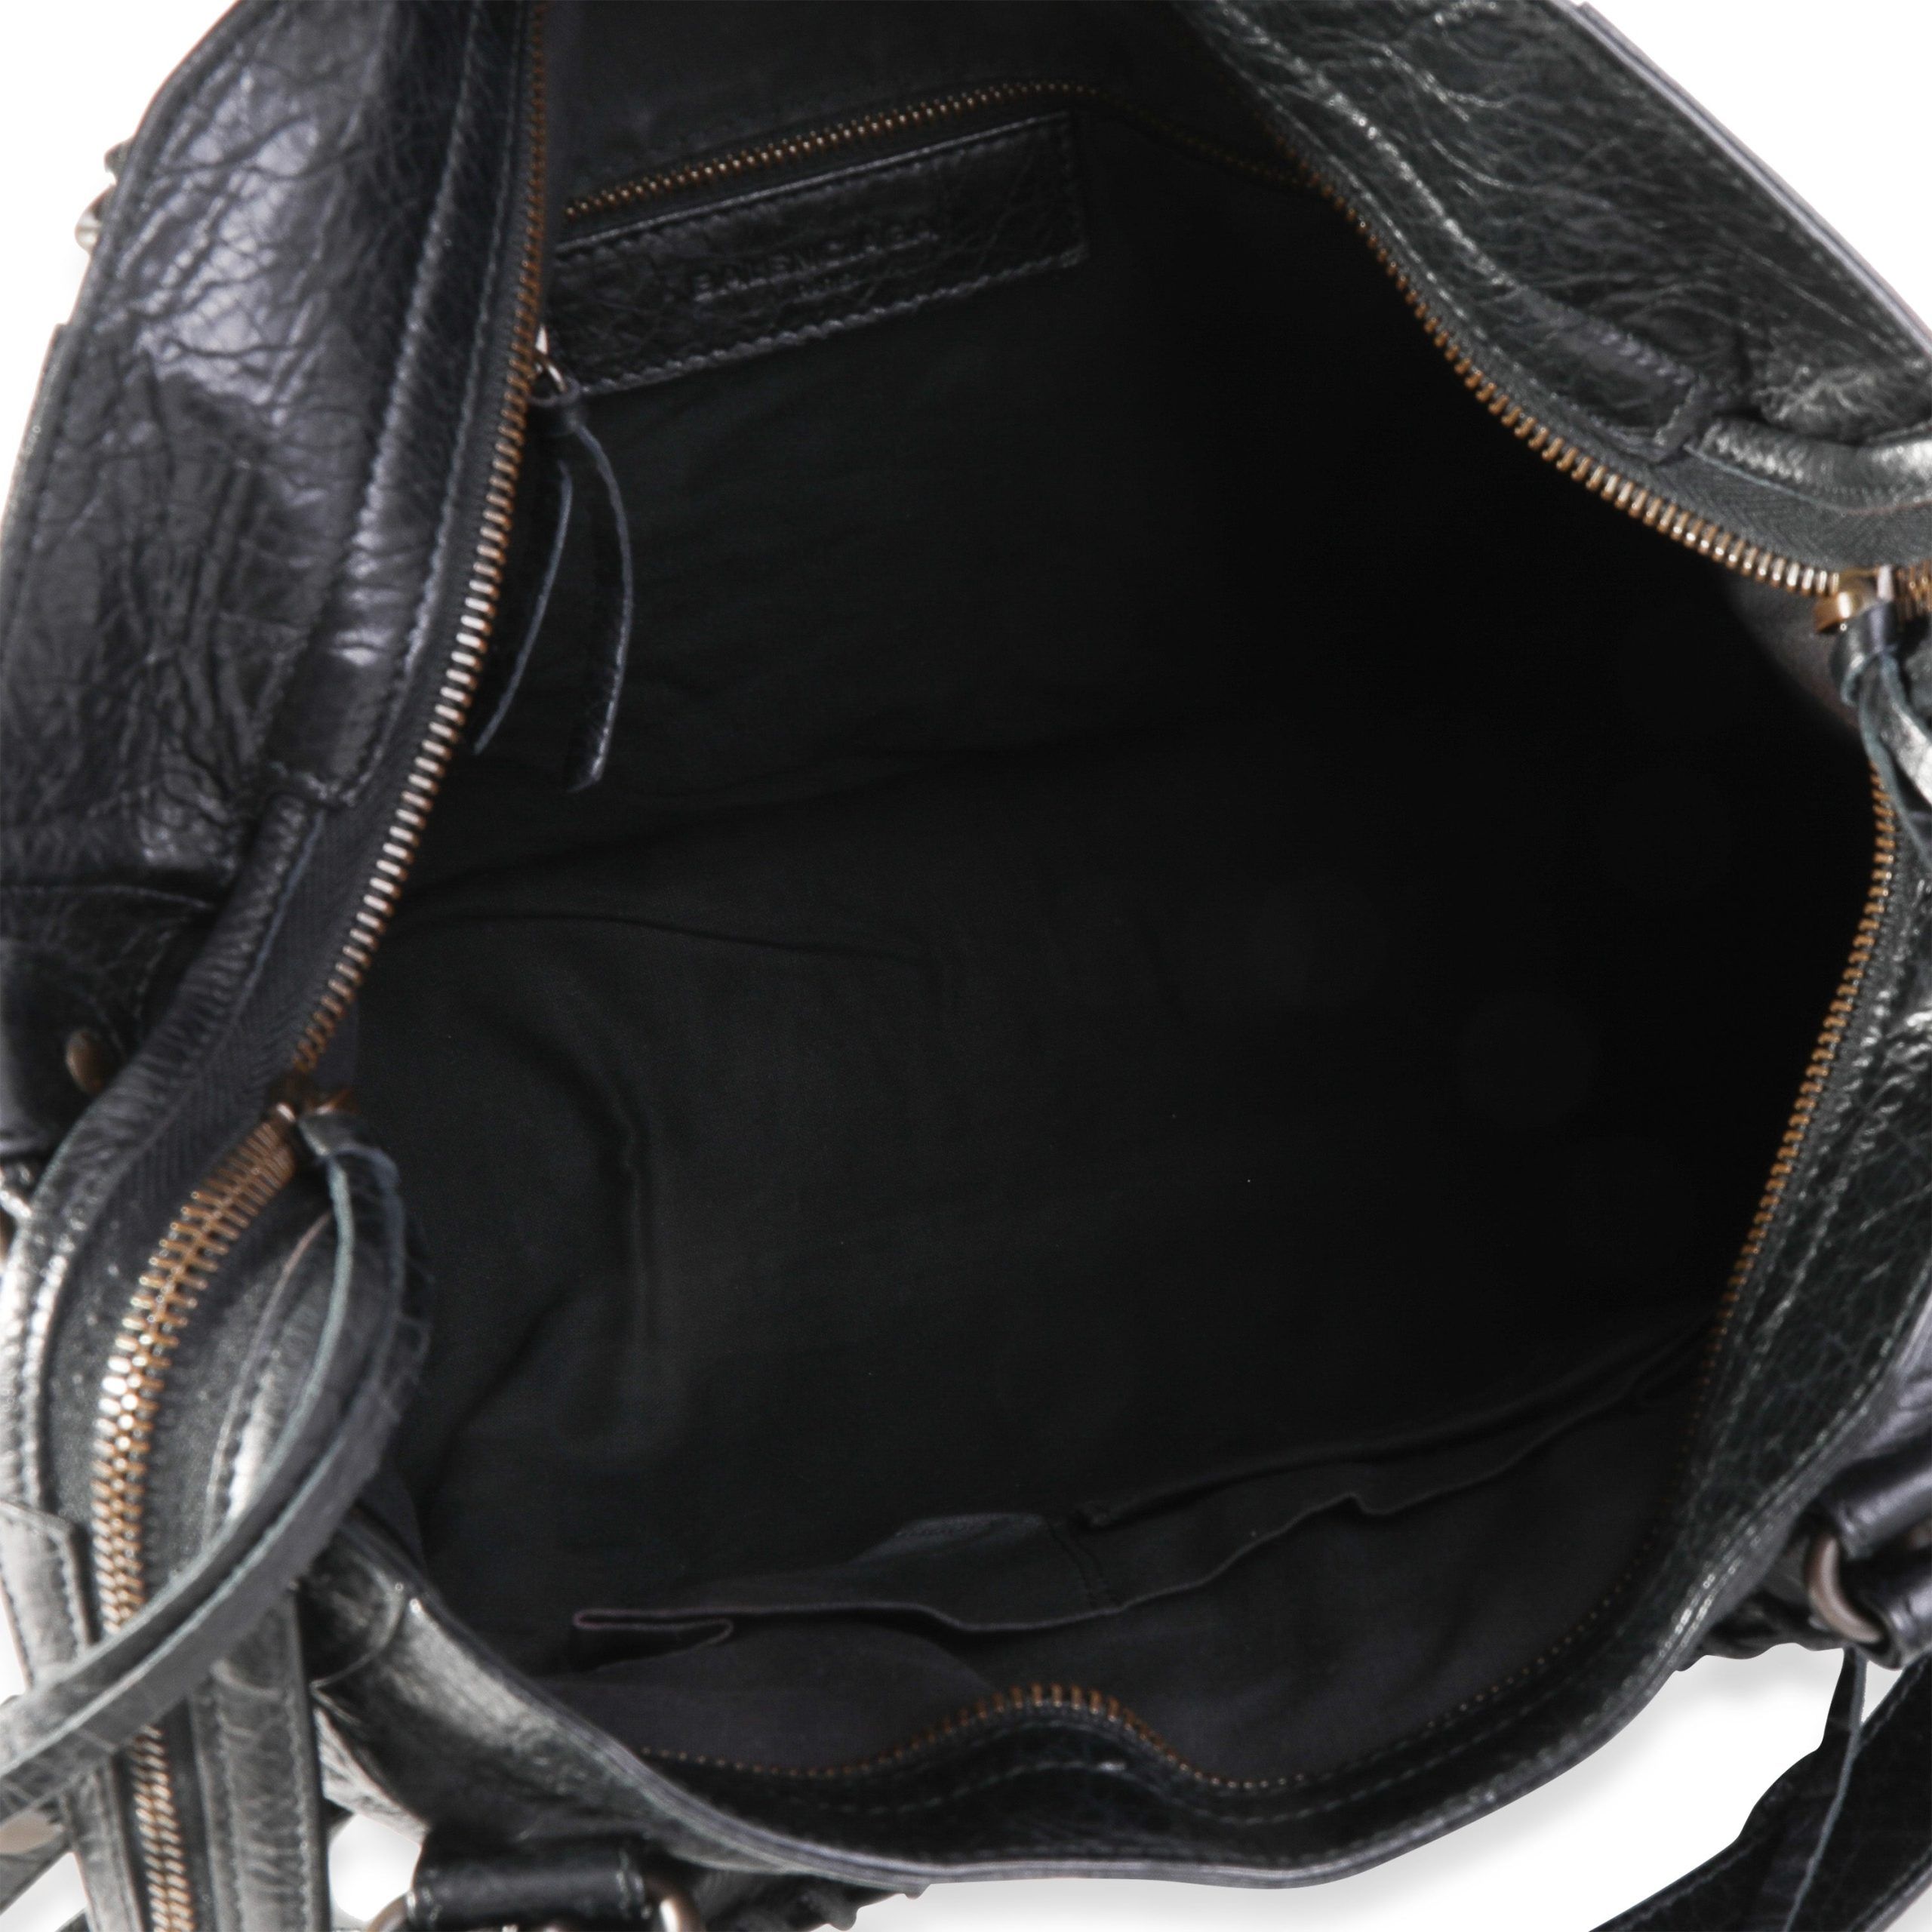 Balenciaga Balenciaga Black Leather Classic Velo Bag Size ONE SIZE - 5 Preview